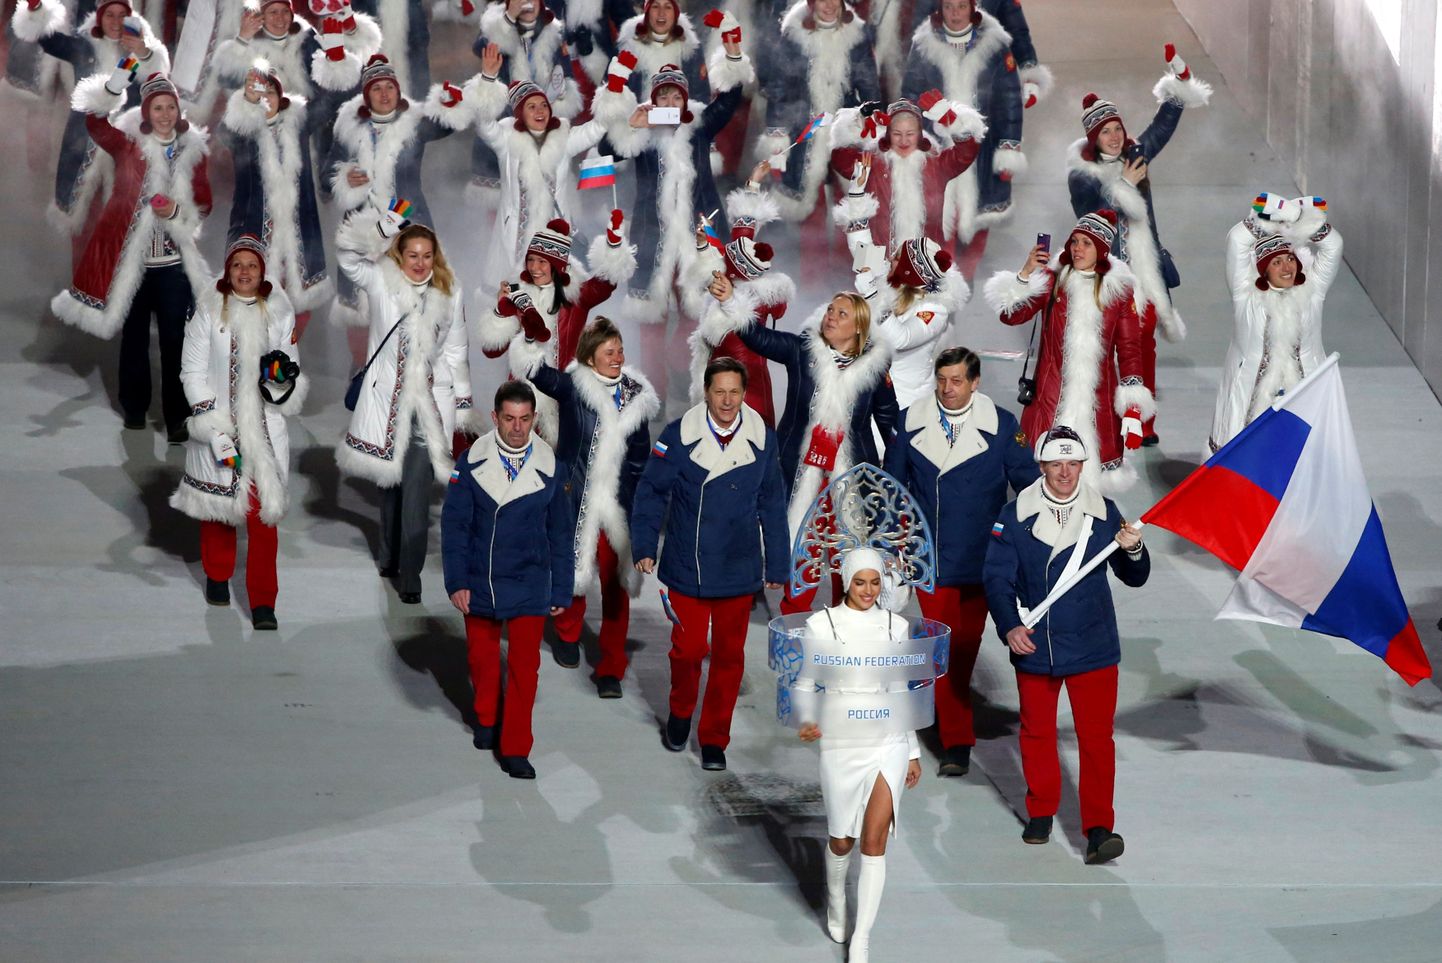 Venemaa olümpiakoondis 2014. aasta taliolümpiamängude avatseremoonial. Järgmisel aastal nad enam lippu lehvitada ei tohi.